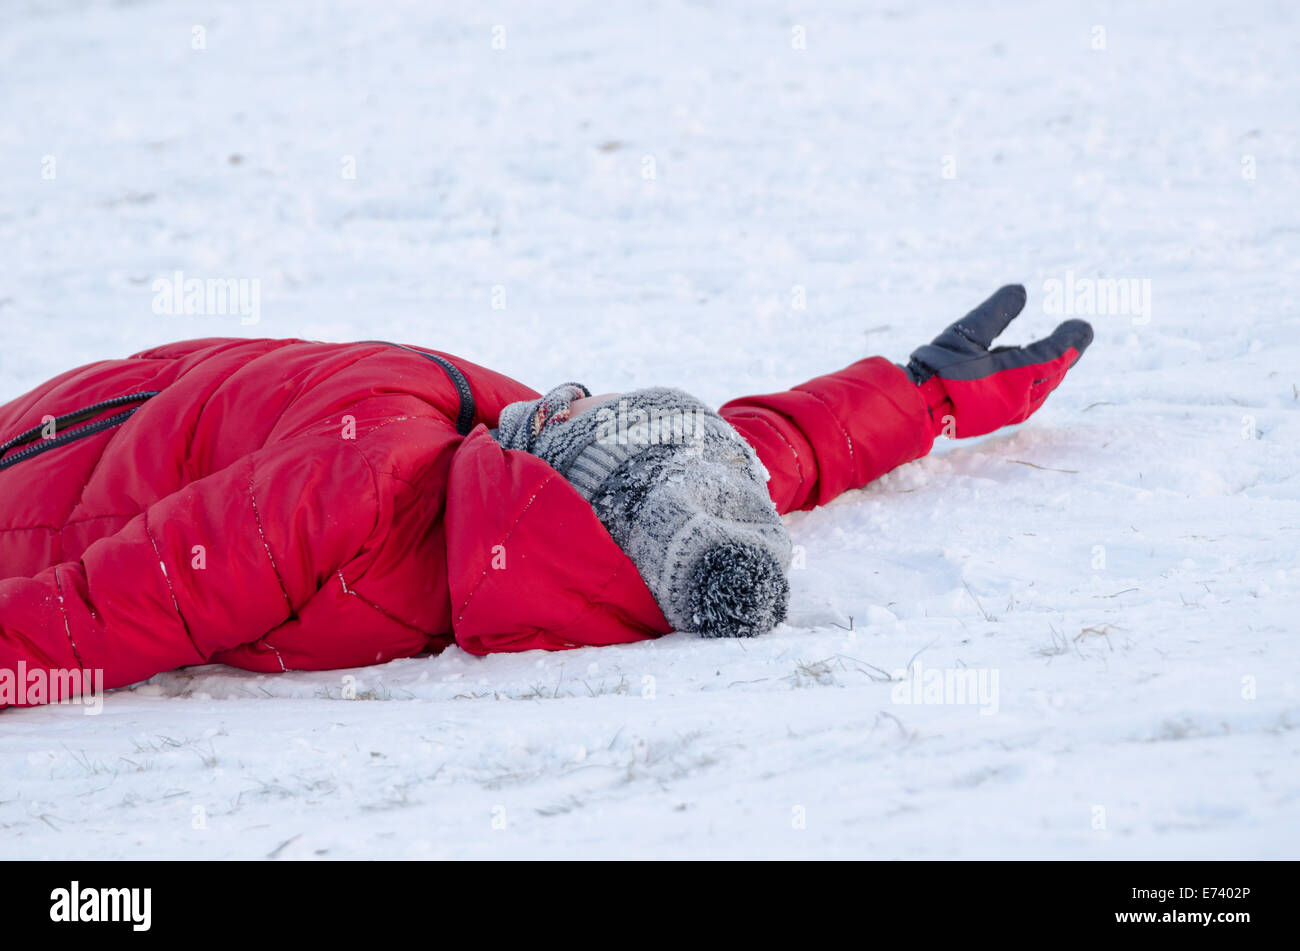 Bambino giacciono sulla neve con il rosso Caldo giubbotto in piuma stanco dalla slitta all'aperto, inverno tempo libero Foto Stock